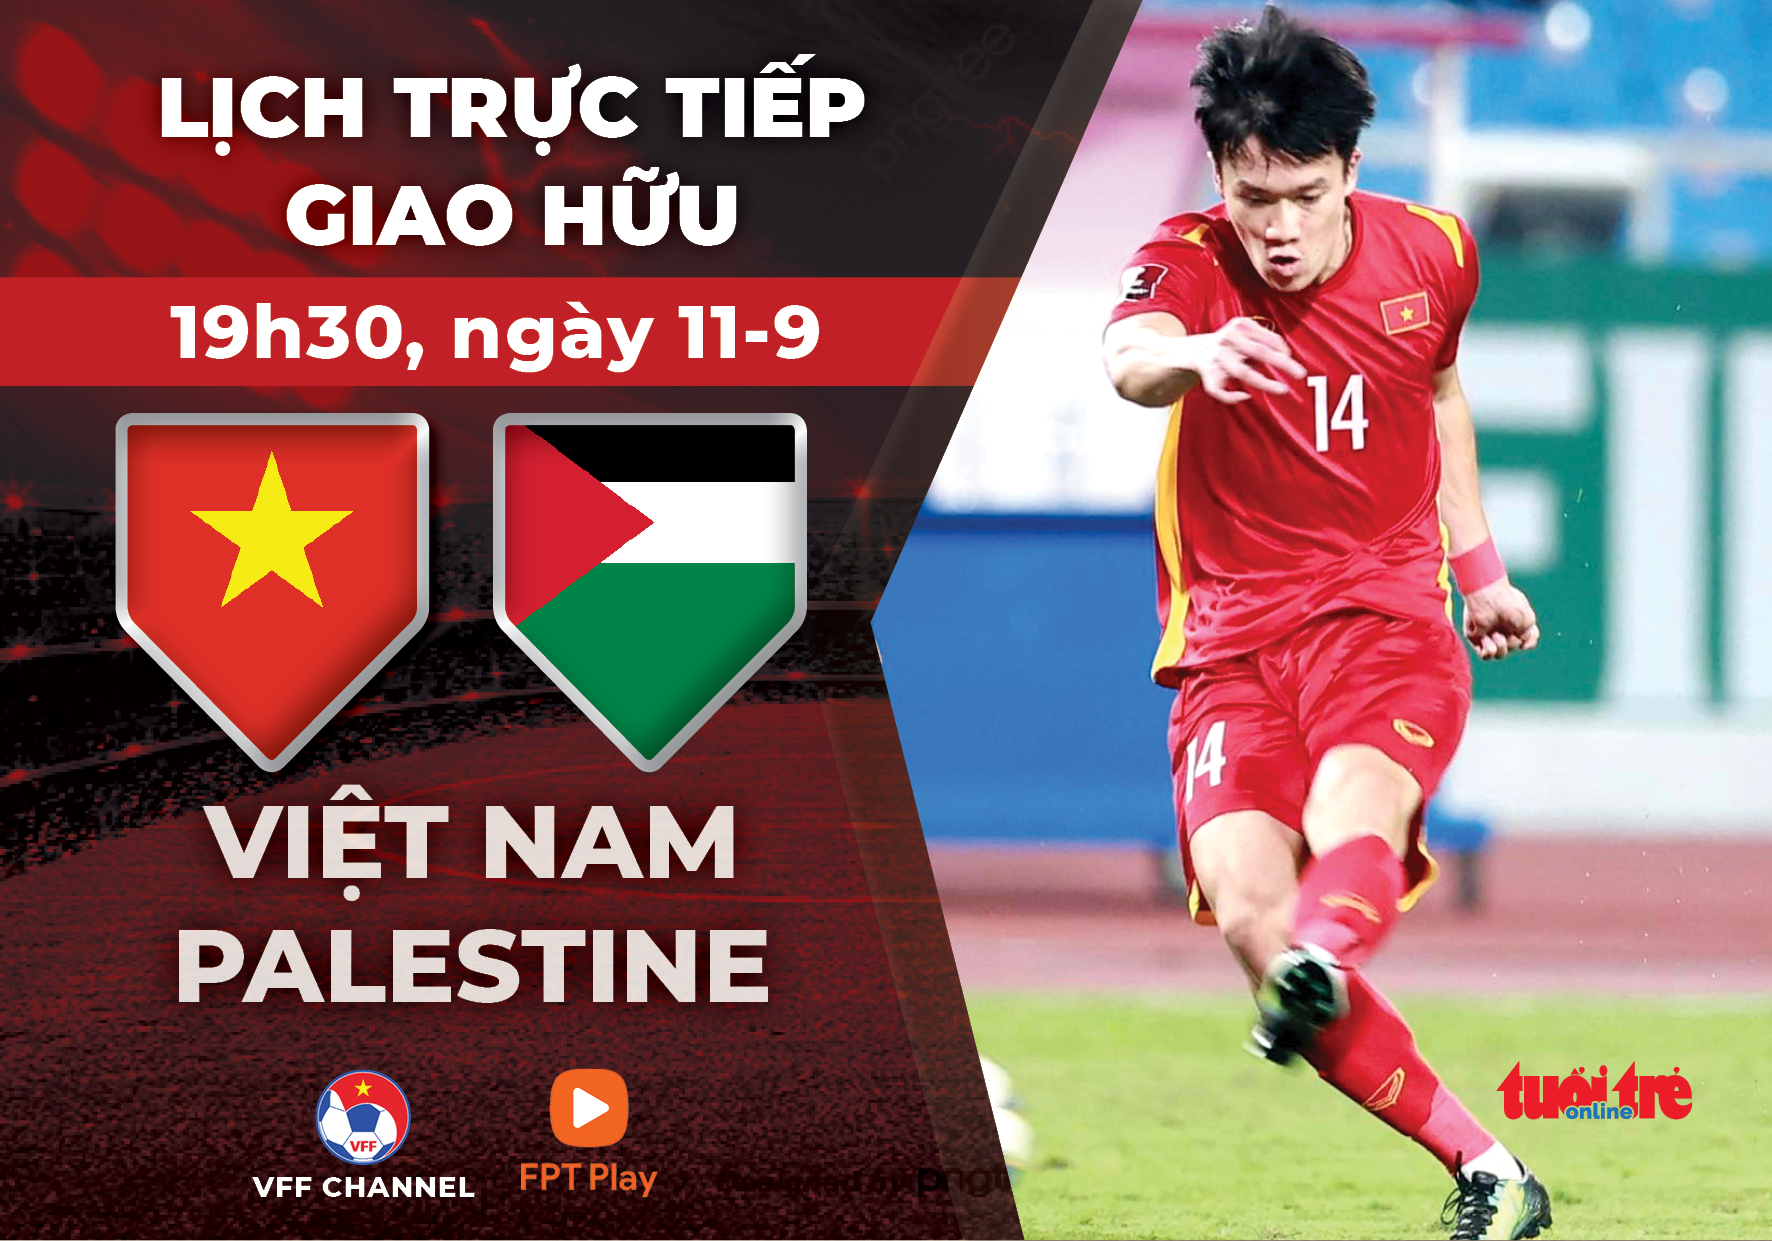 Lịch trực tiếp giao hữu tuyển Việt Nam đấu Palestine - Ảnh 1.